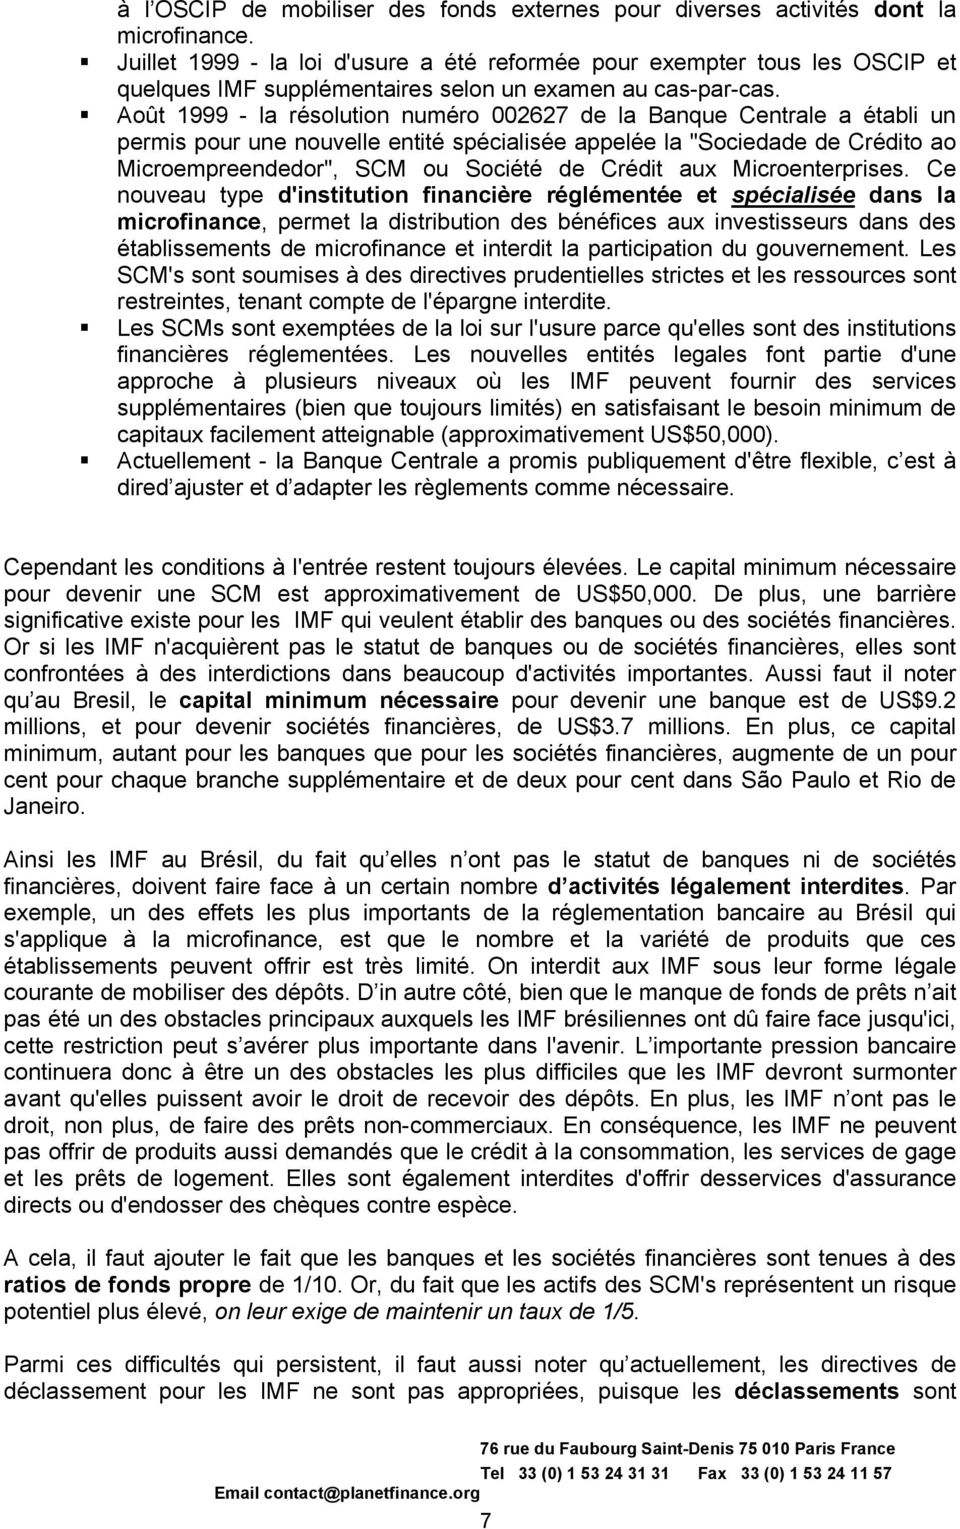 Août 1999 - la résolution numéro 002627 de la Banque Centrale a établi un permis pour une nouvelle entité spécialisée appelée la "Sociedade de Crédito ao Microempreendedor", SCM ou Société de Crédit